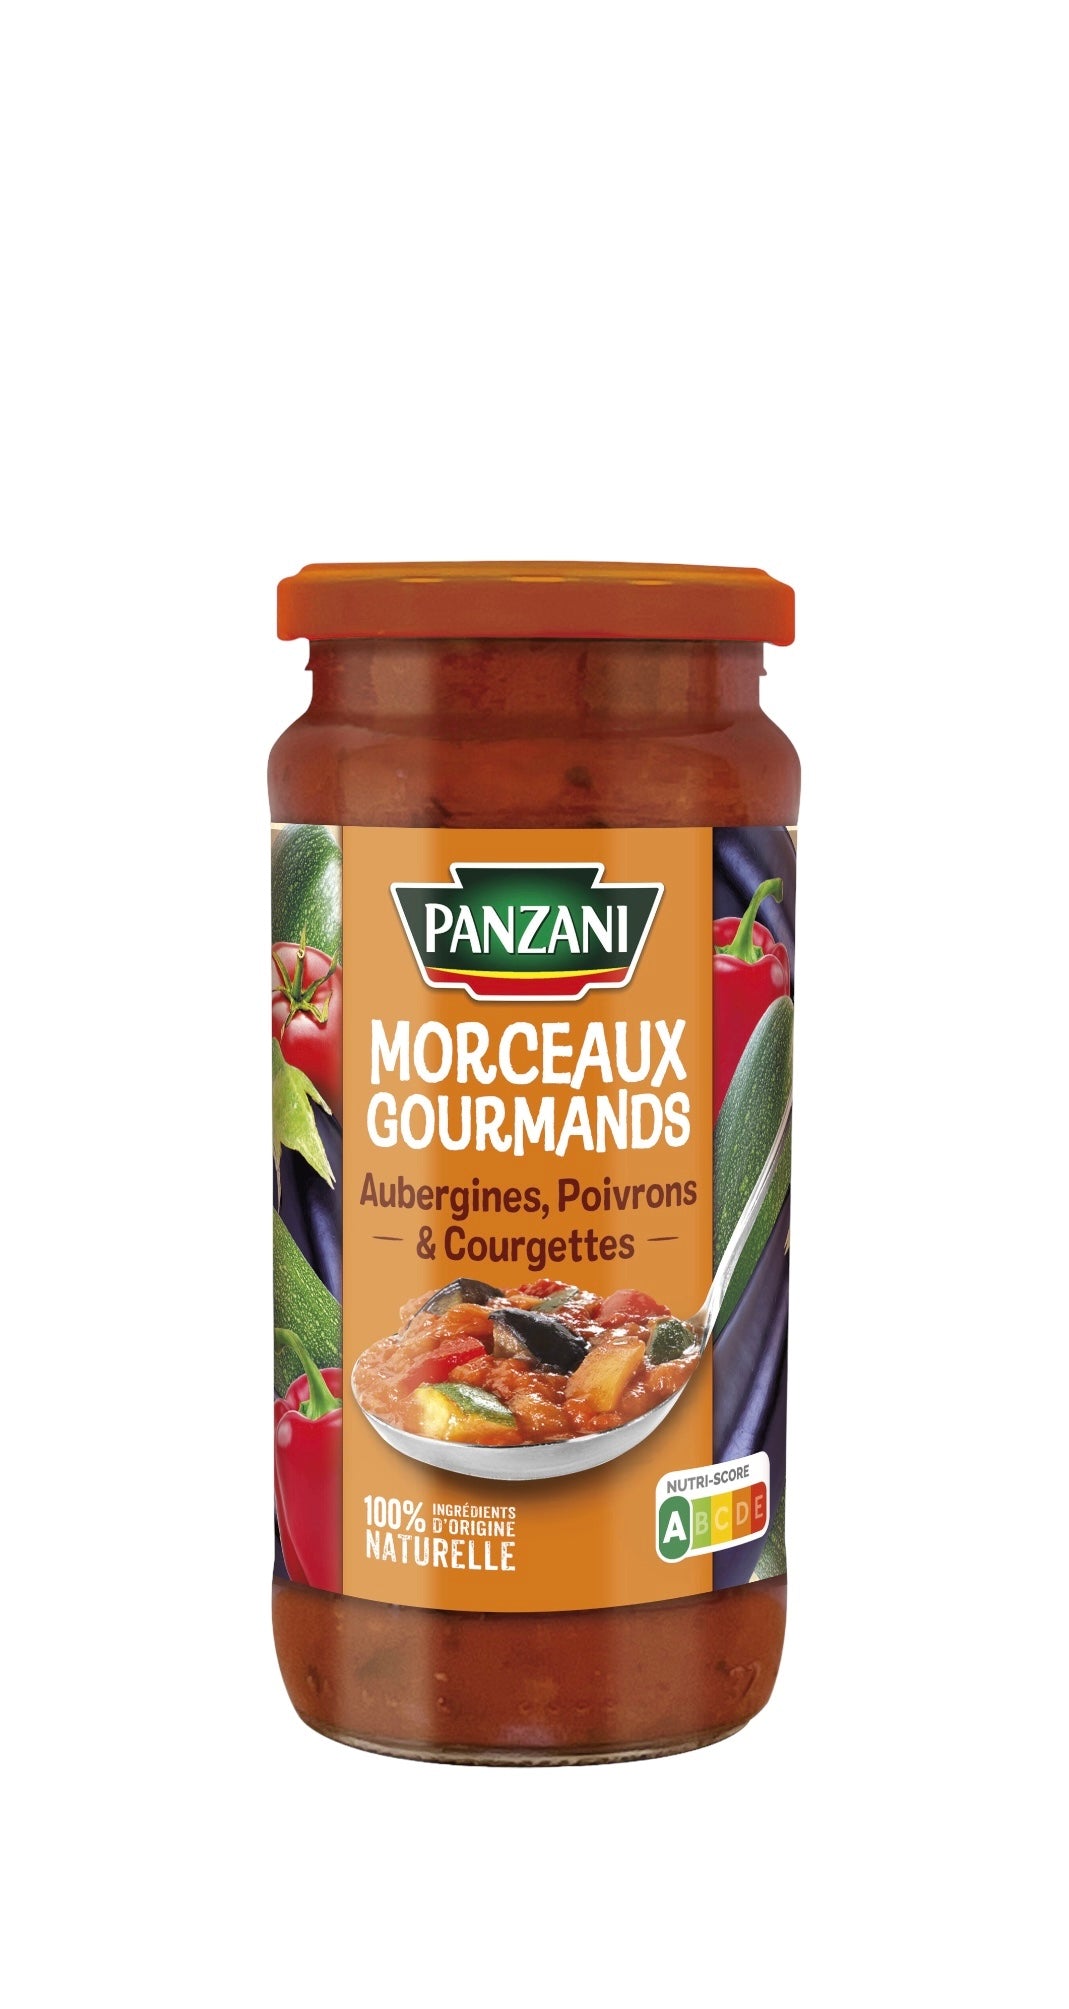 Sauce aubergine, poivrons et courgettes morceaux gourmands PANZANI 400g DLUO 01/06/2026  -H92